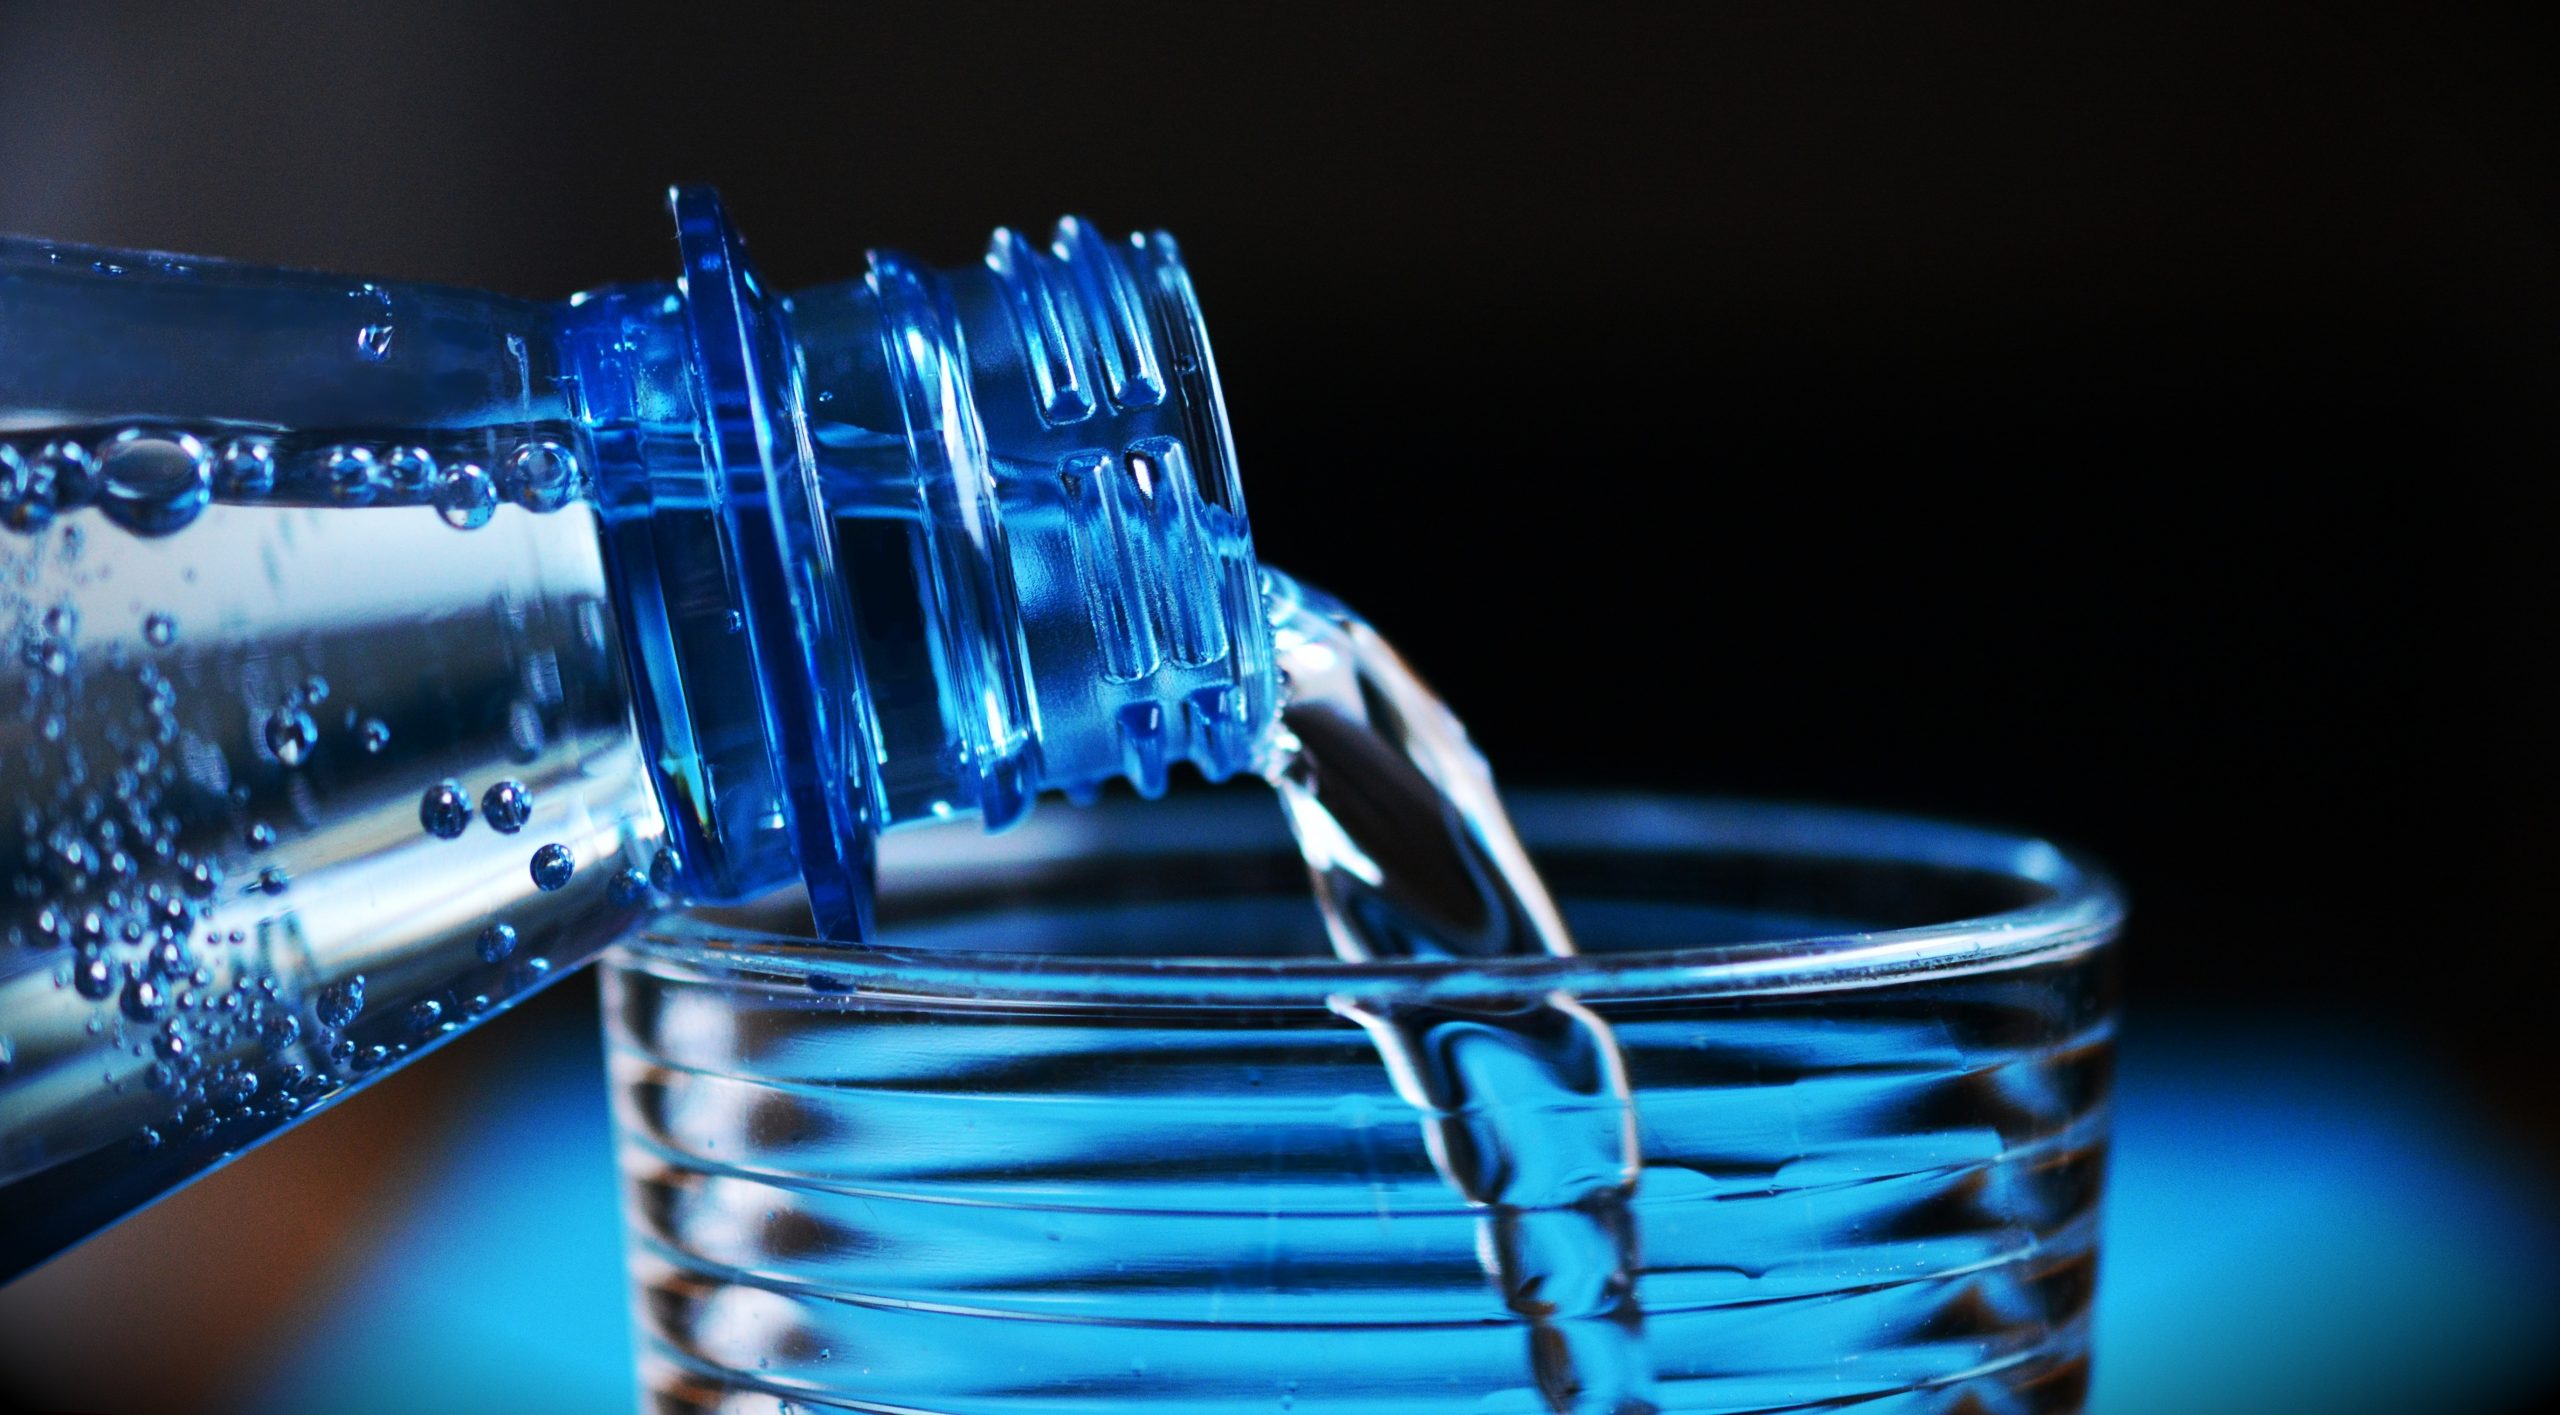 Anlagen und Chemie zur Aufbereitung vonTrinkwasser - Desinfektion von Trinkwasser